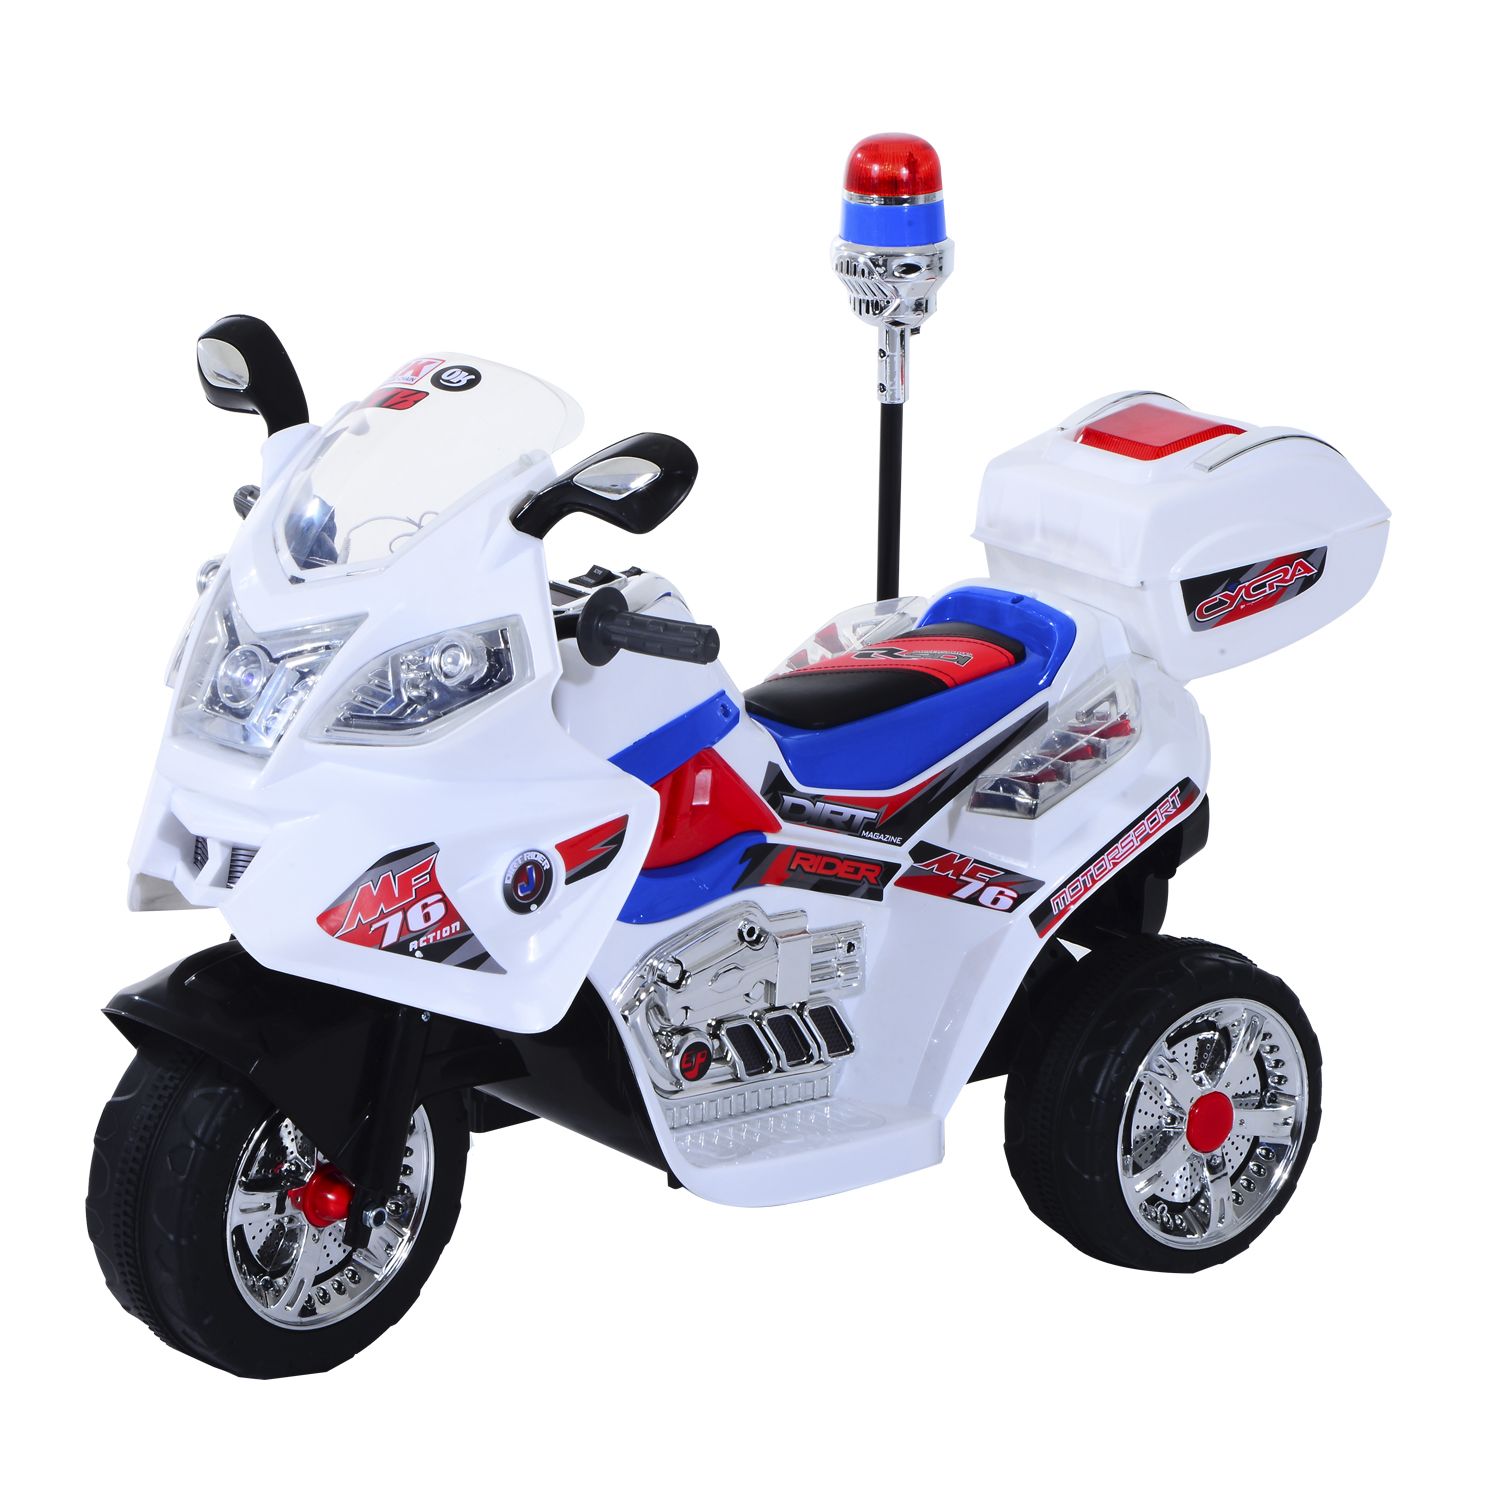 HOMCOM Moto cross électrique enfant 3 à 5 ans 12 V 3-8 Km/h avec